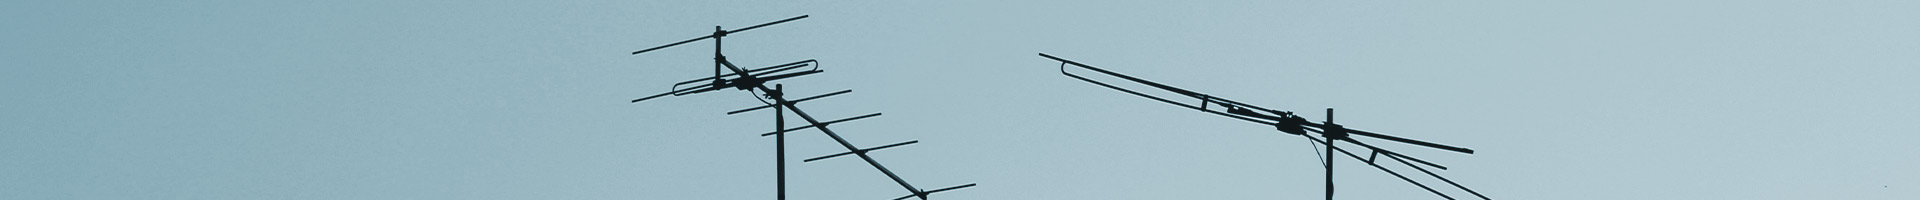 mantenimiento-antenas-colectivas-malaga-2